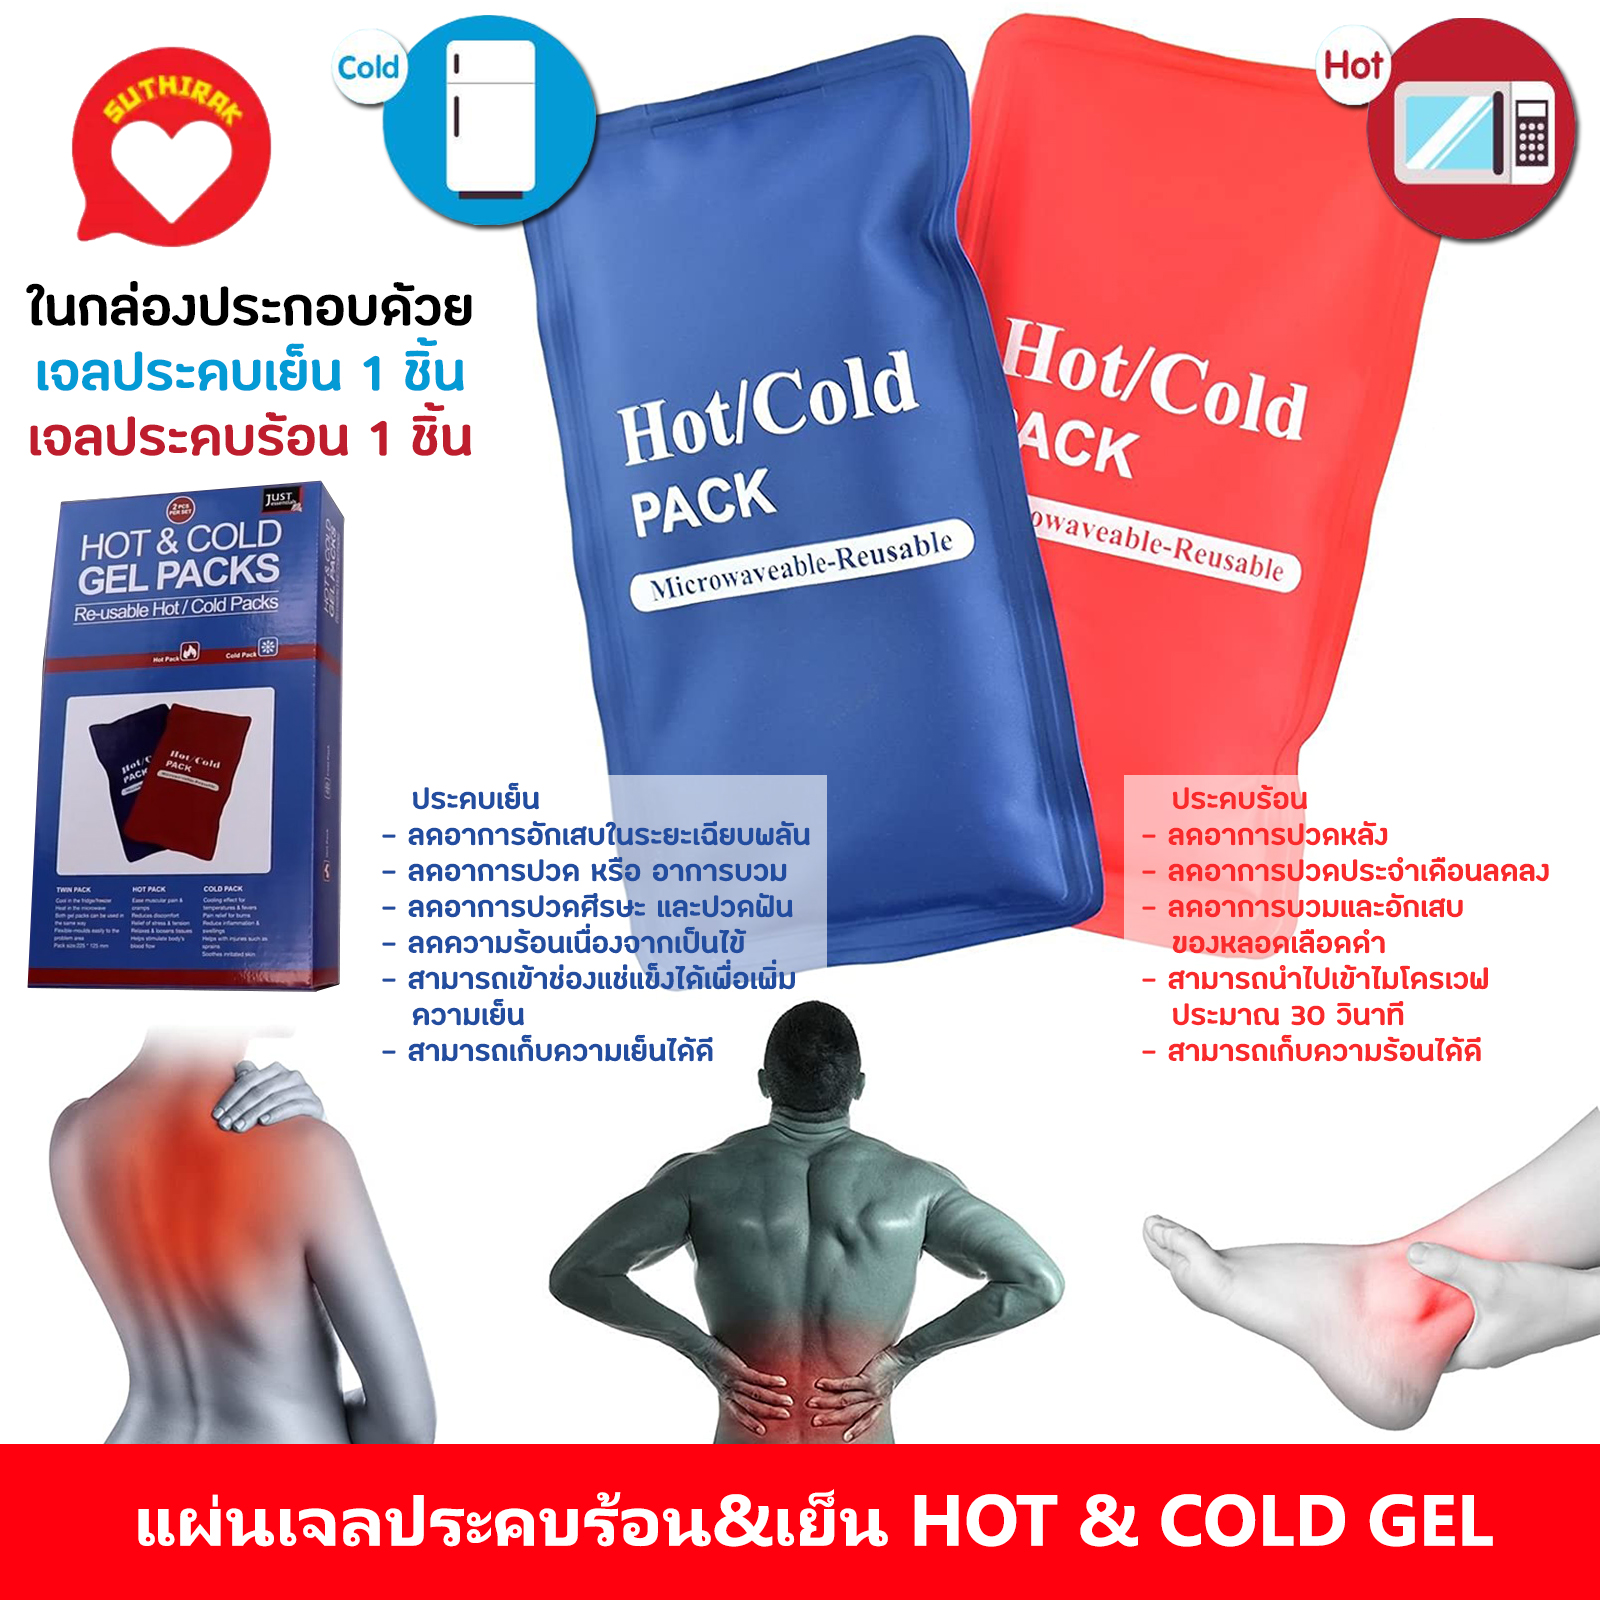 เจลประคบร้อนเย็น ถุงประคบร้อนเย็น ถุงประคบร้อน ถุงประคบเย็น แผ่นเจลประคบ ประคบร้อน ที่ประคบร้อน ถุงประคบ HotCold Pack